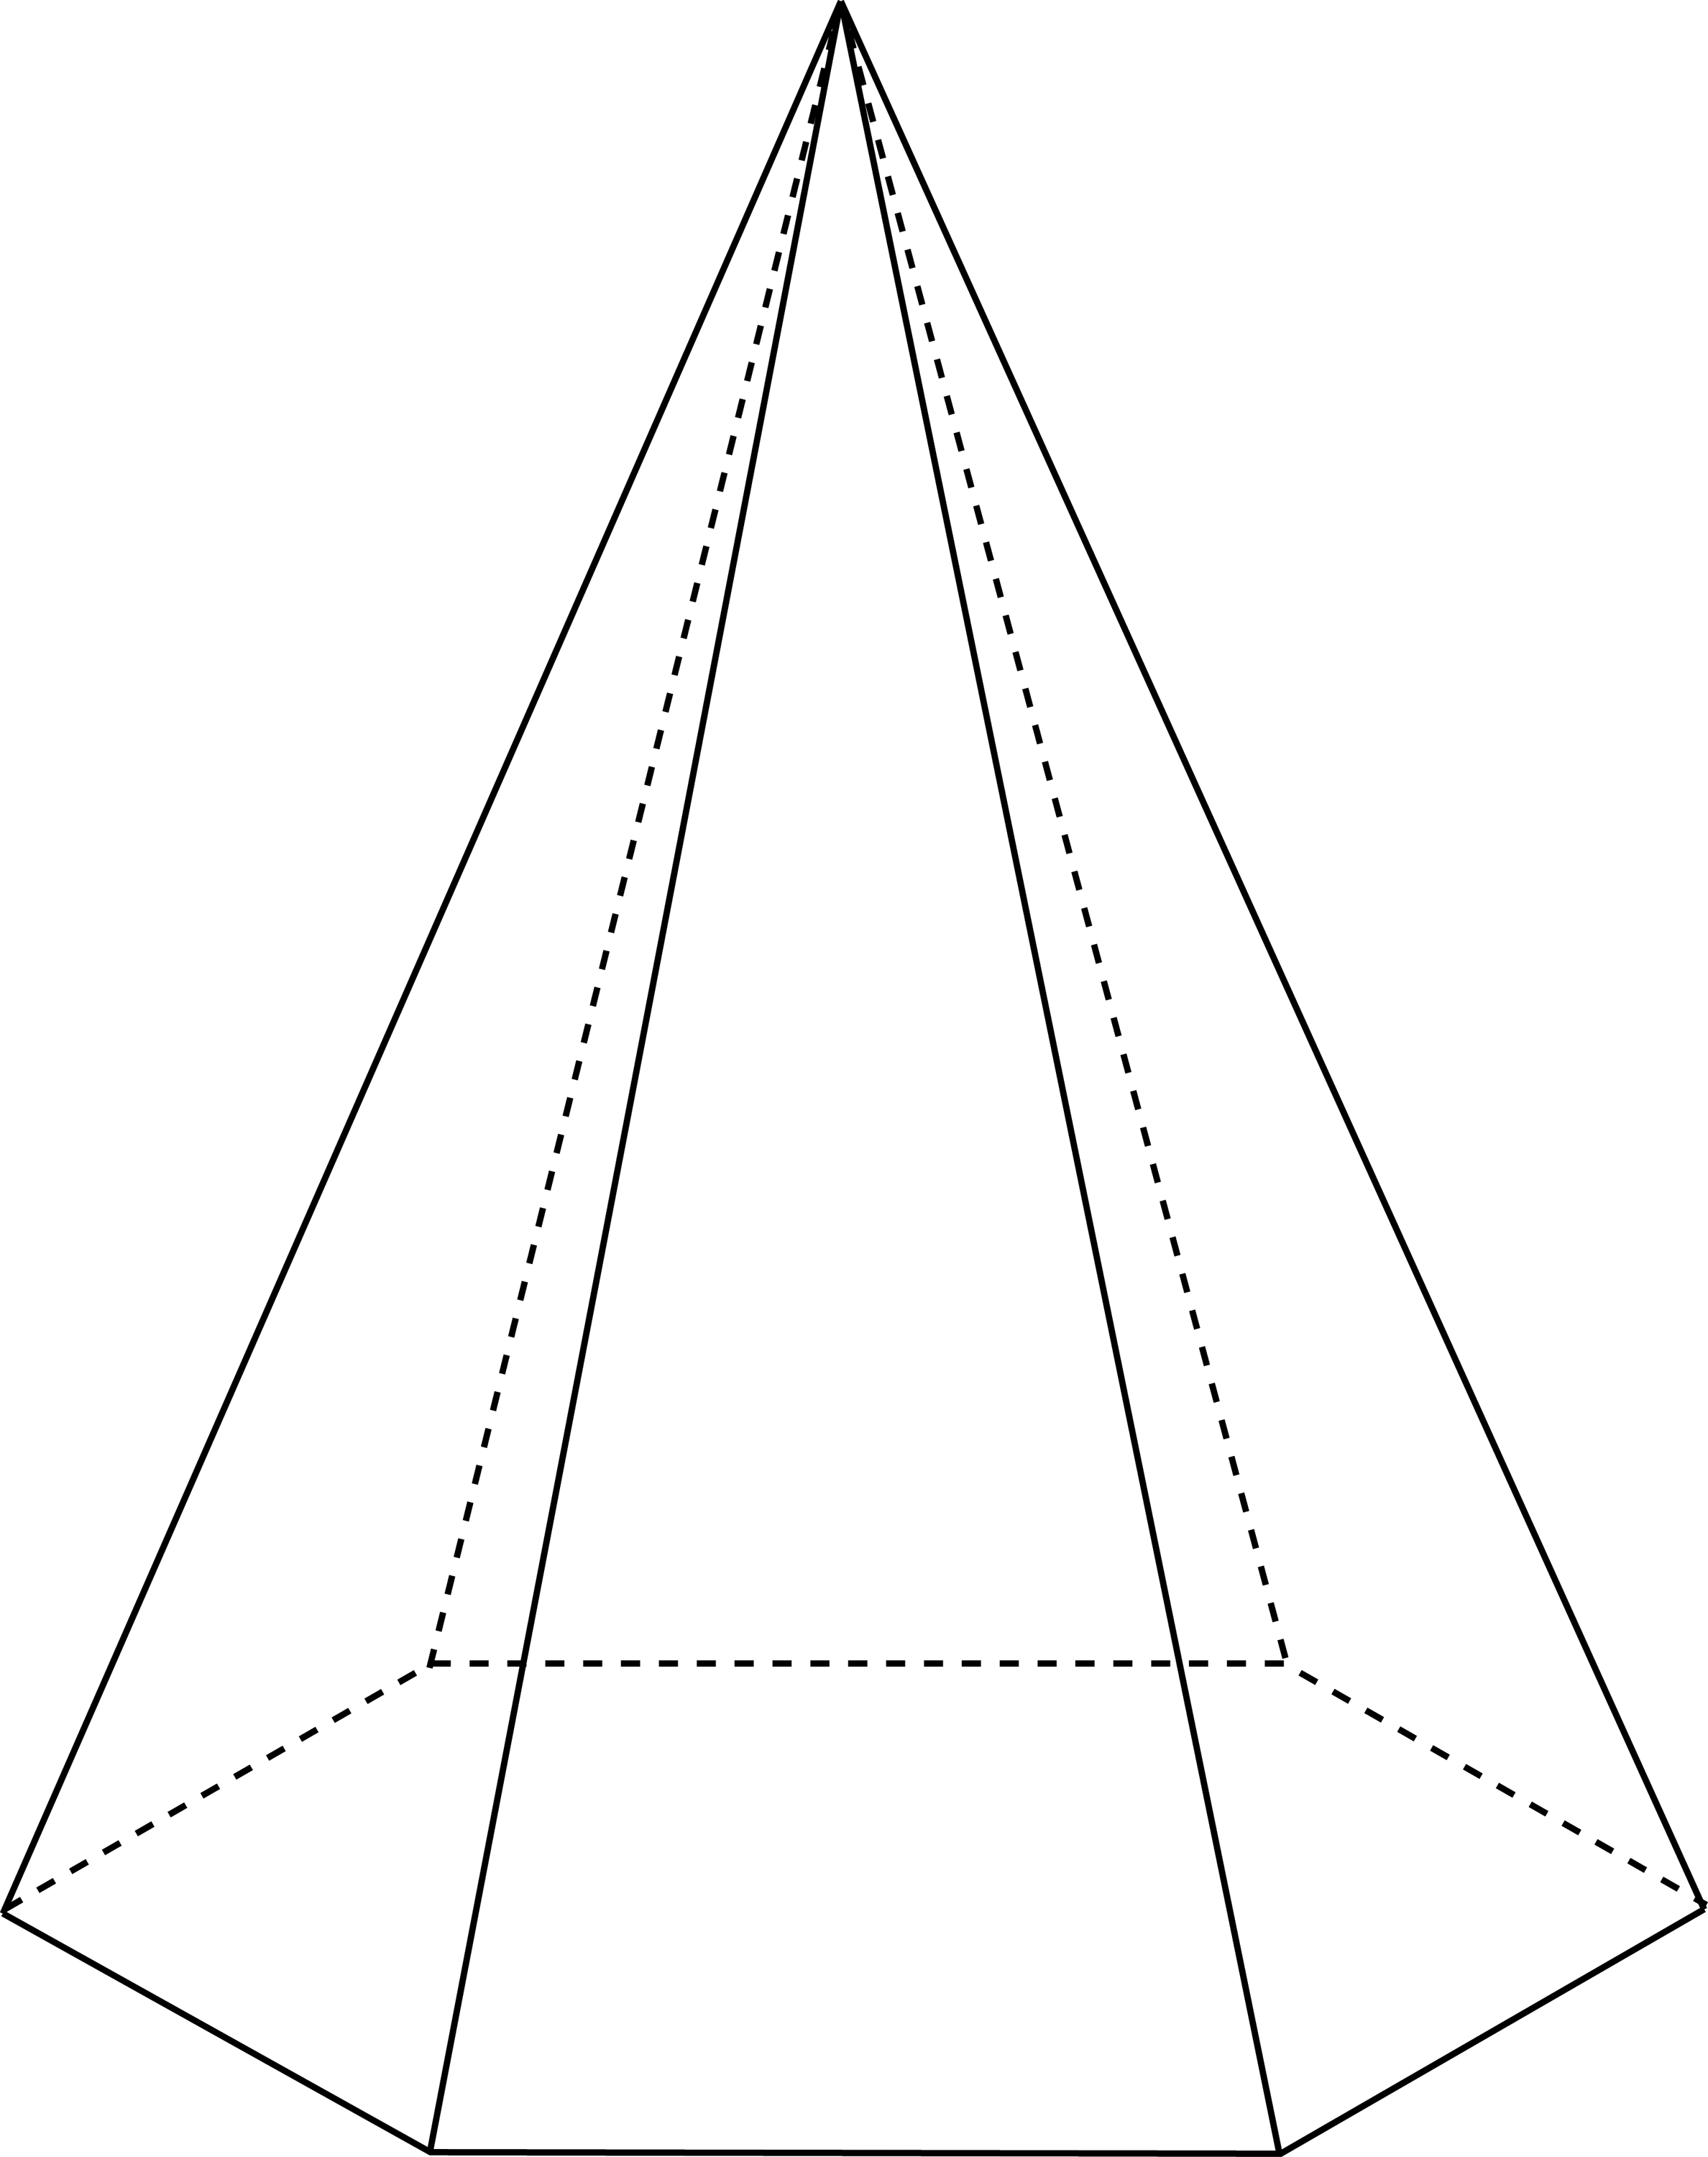 пирамида это геометрическая фигура